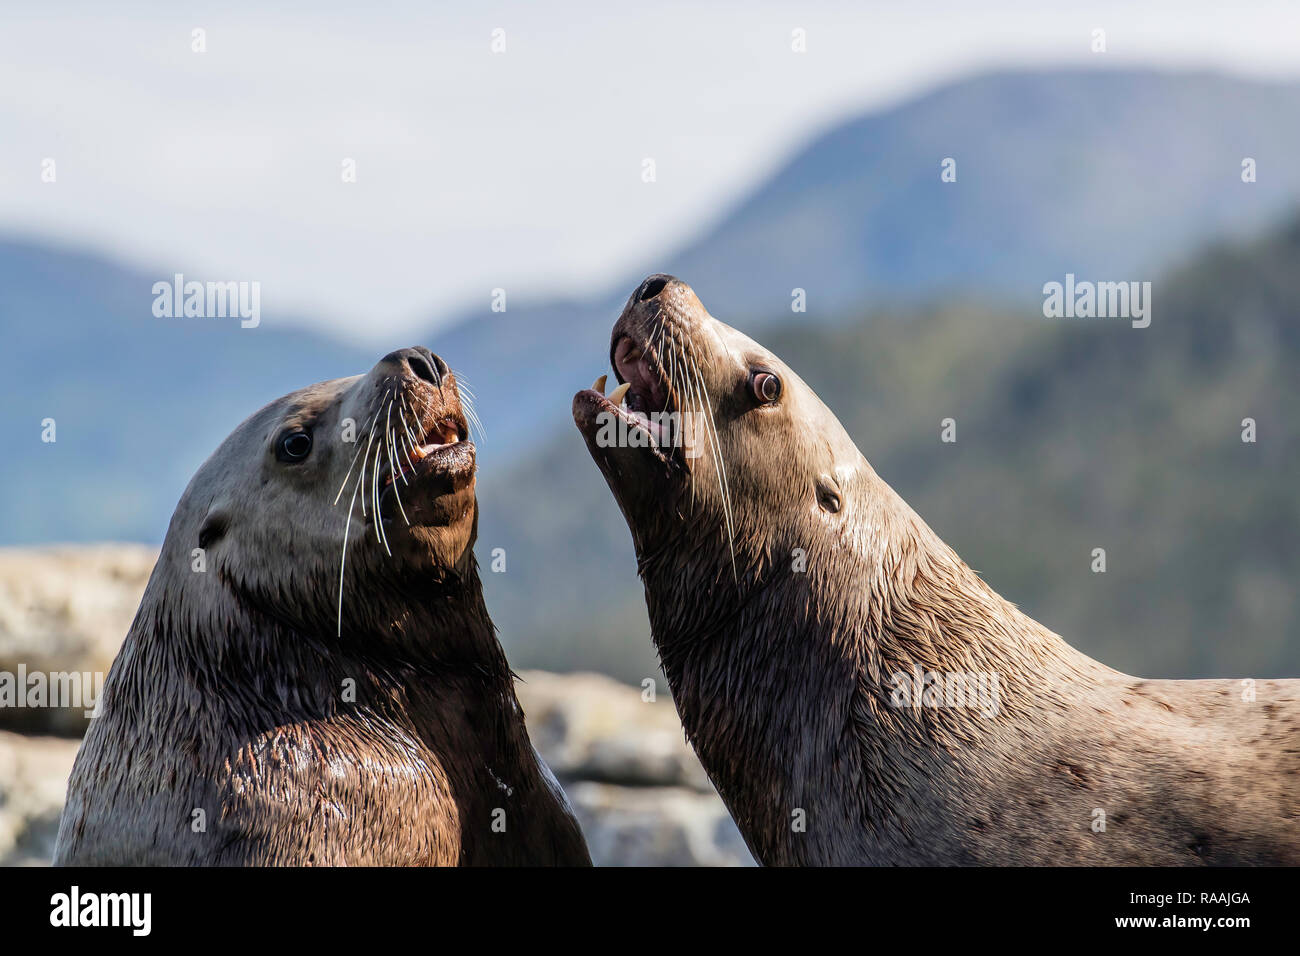 Bull adultes, les lions de mer de Steller (Eumetopias jubatus), des simulations de combats, Inian Islands, Alaska, USA. Banque D'Images